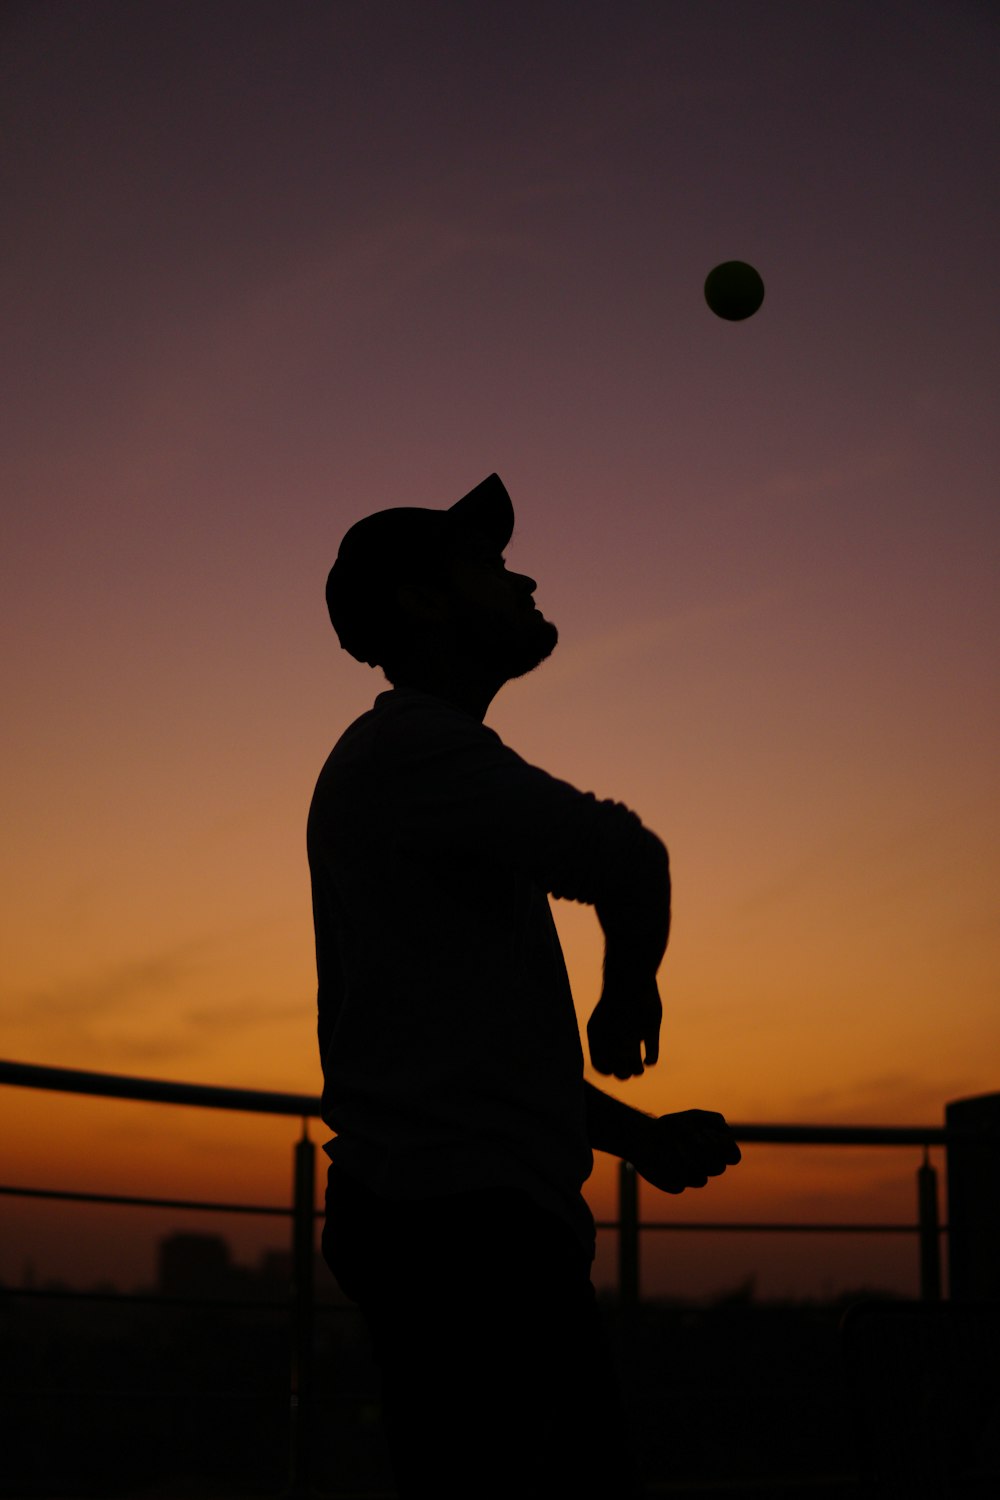 a man playing baseball